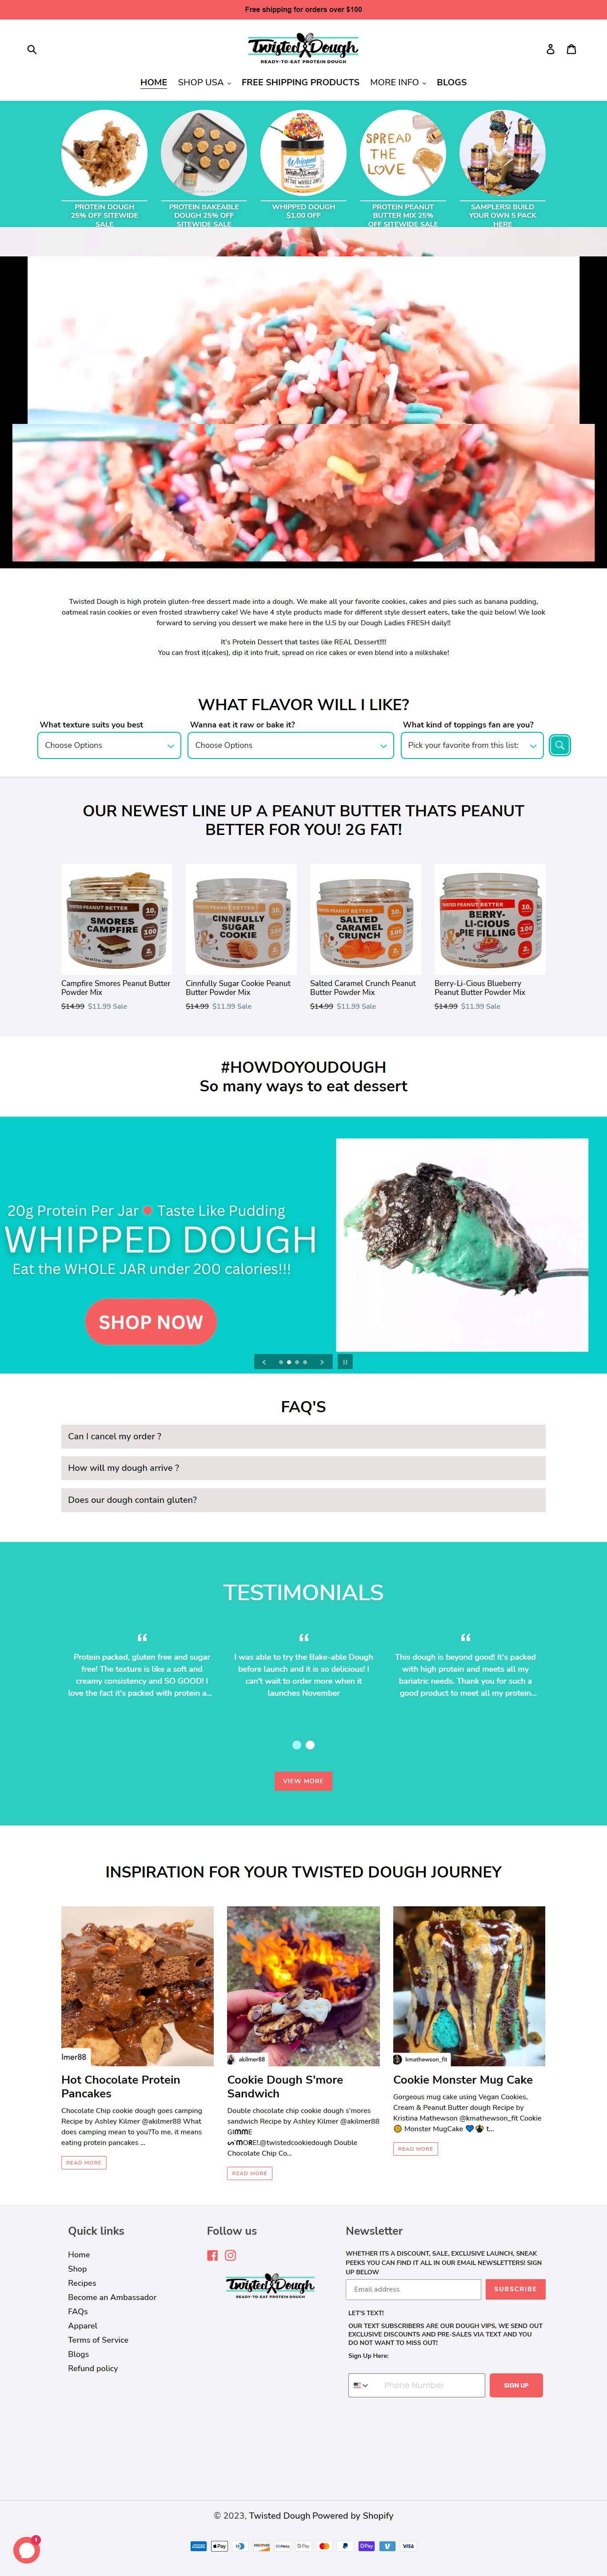 twisted dough website design portfolio